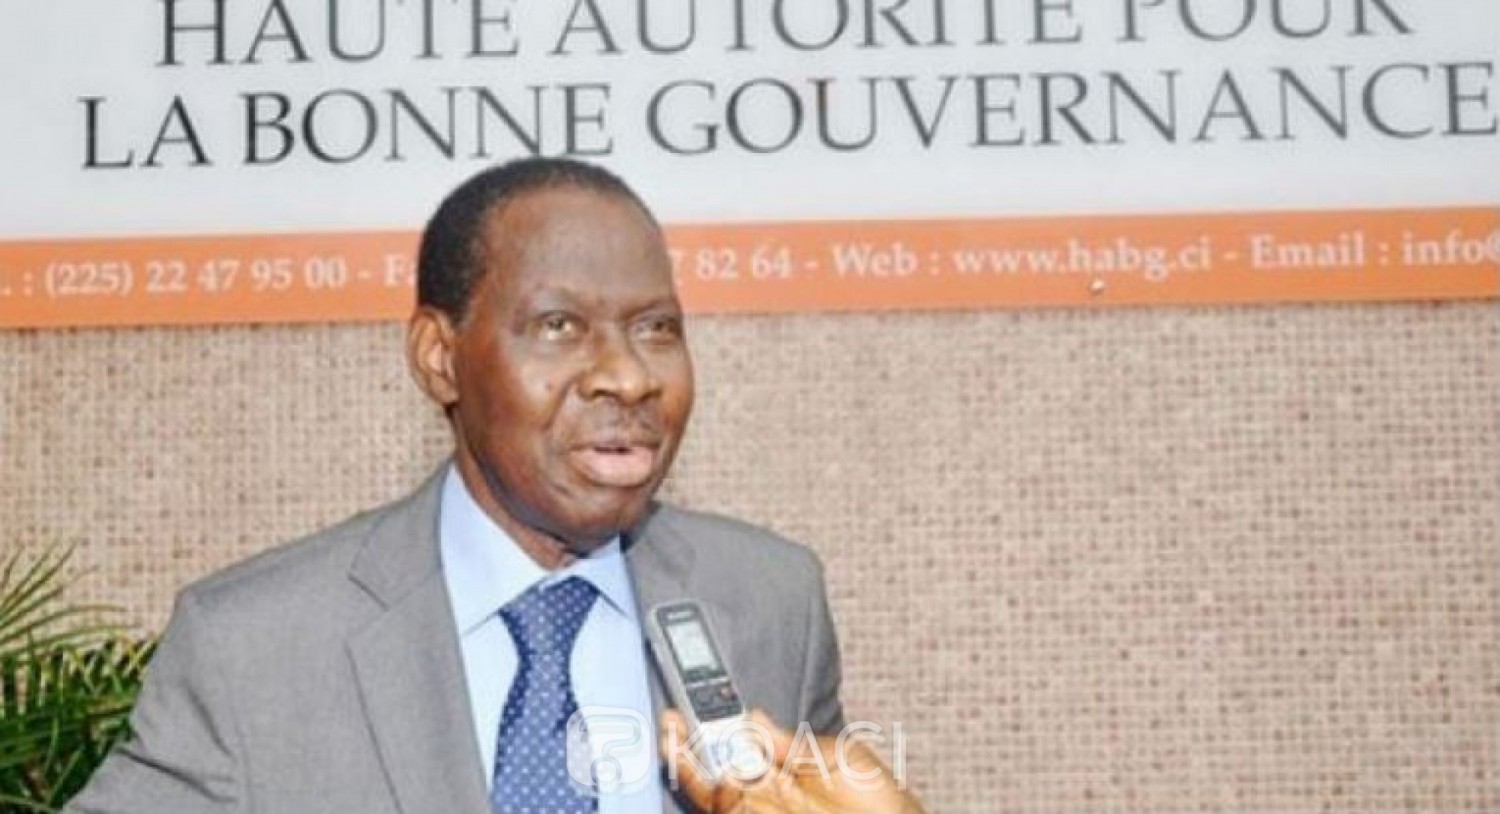 Côte d'Ivoire: Bonne Gouvernance, tout savoir sur la déclaration du patrimoine et la sanction prévue contre tous manquements